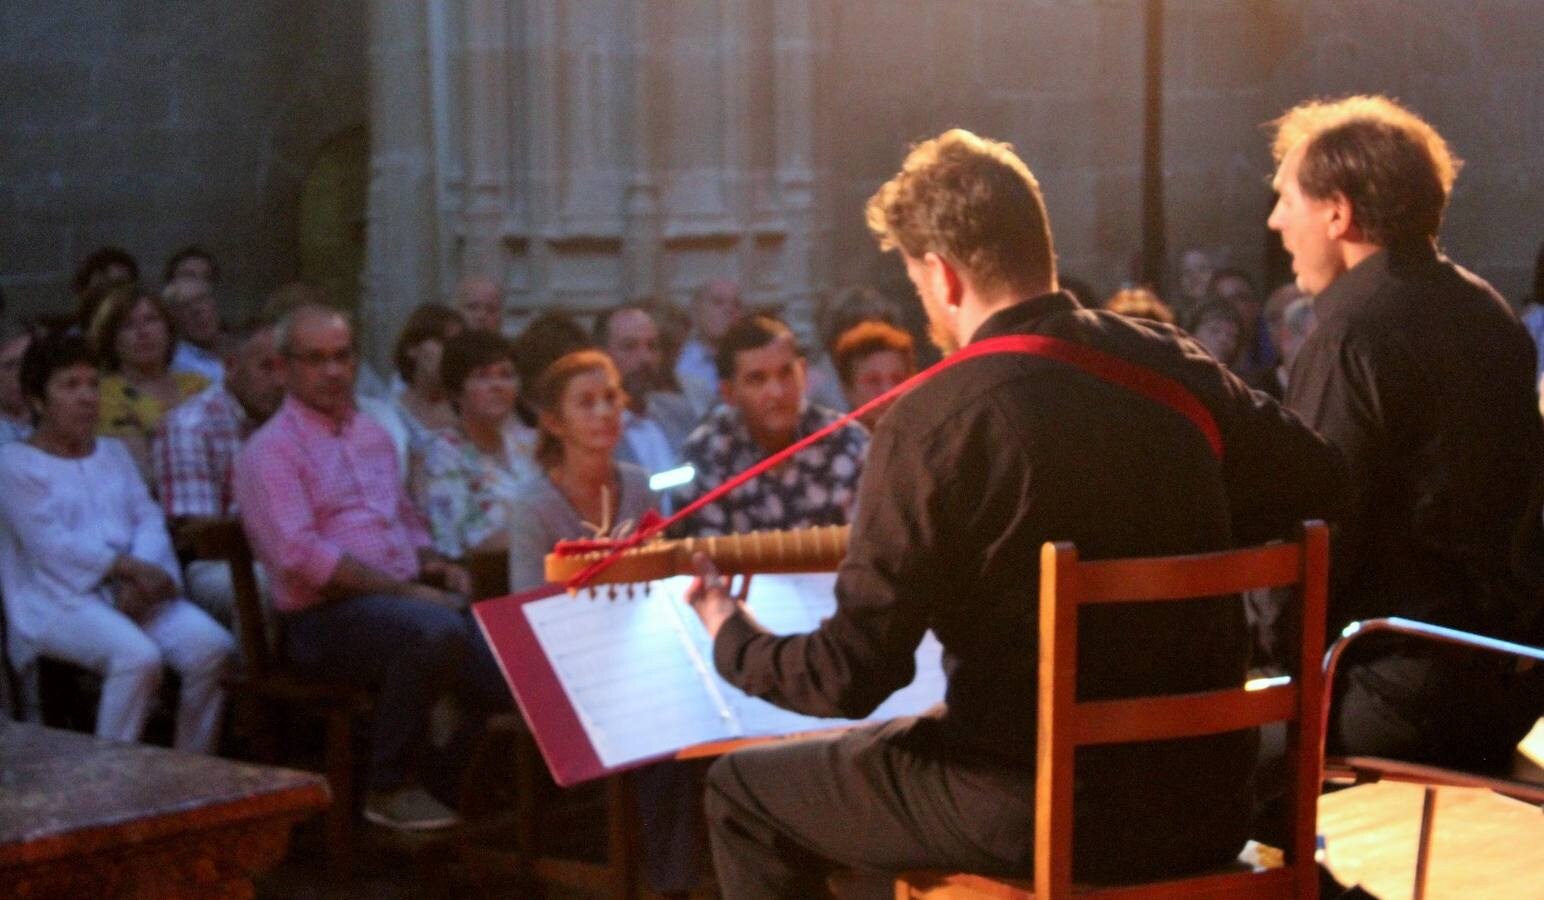 Doble recital ‘O pàssi sparsi’ en el Festival de Música Antigua de Casalarreina